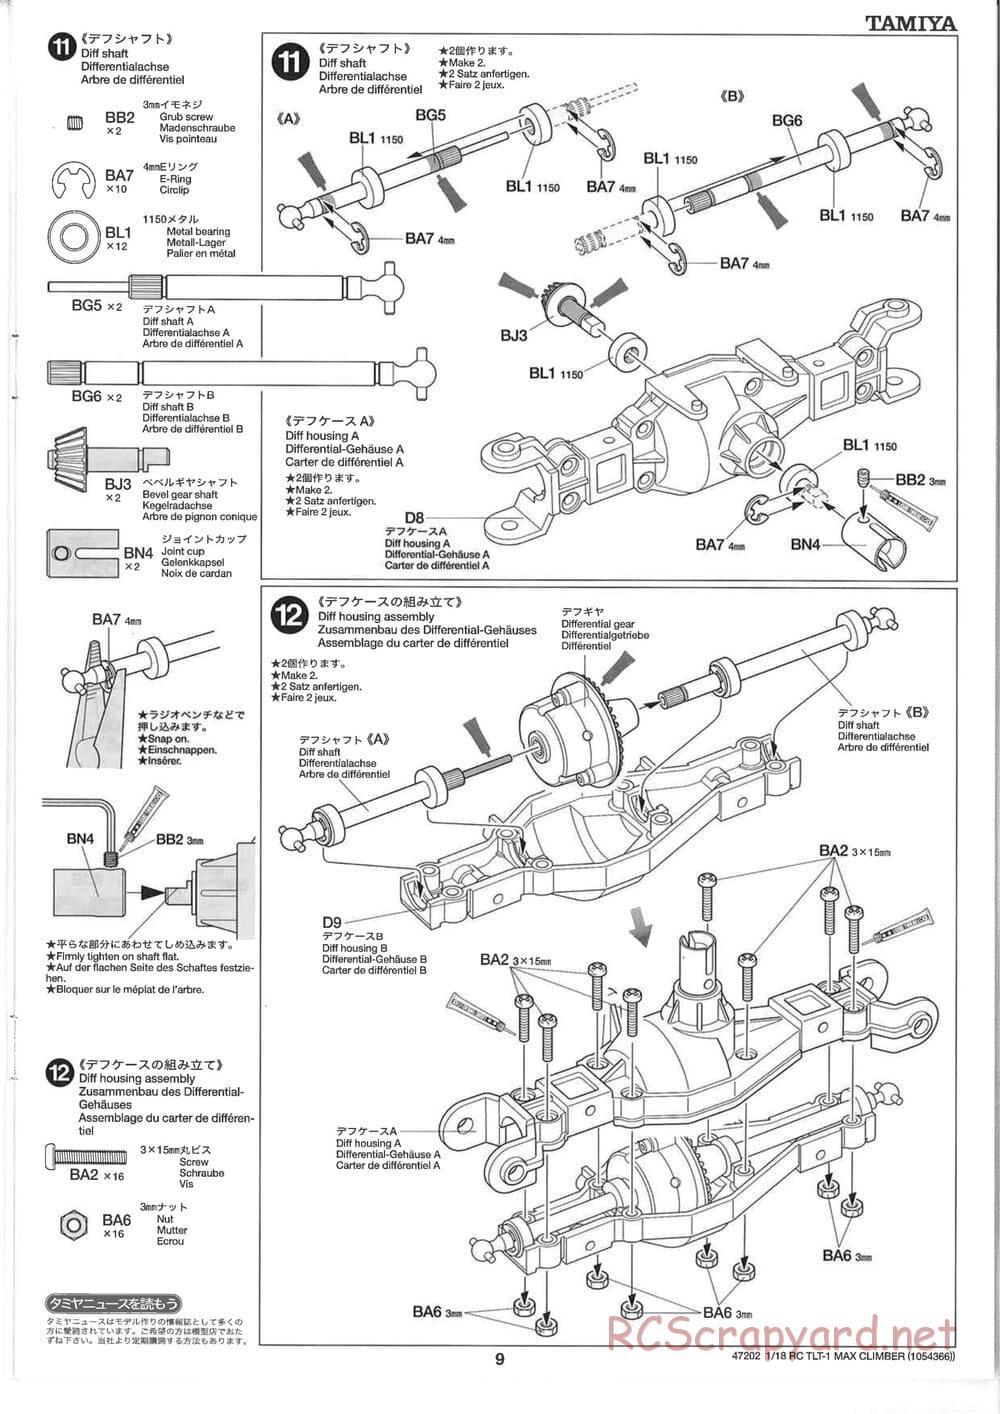 Tamiya - Max Climber - TLT-1 Chassis - Manual - Page 9